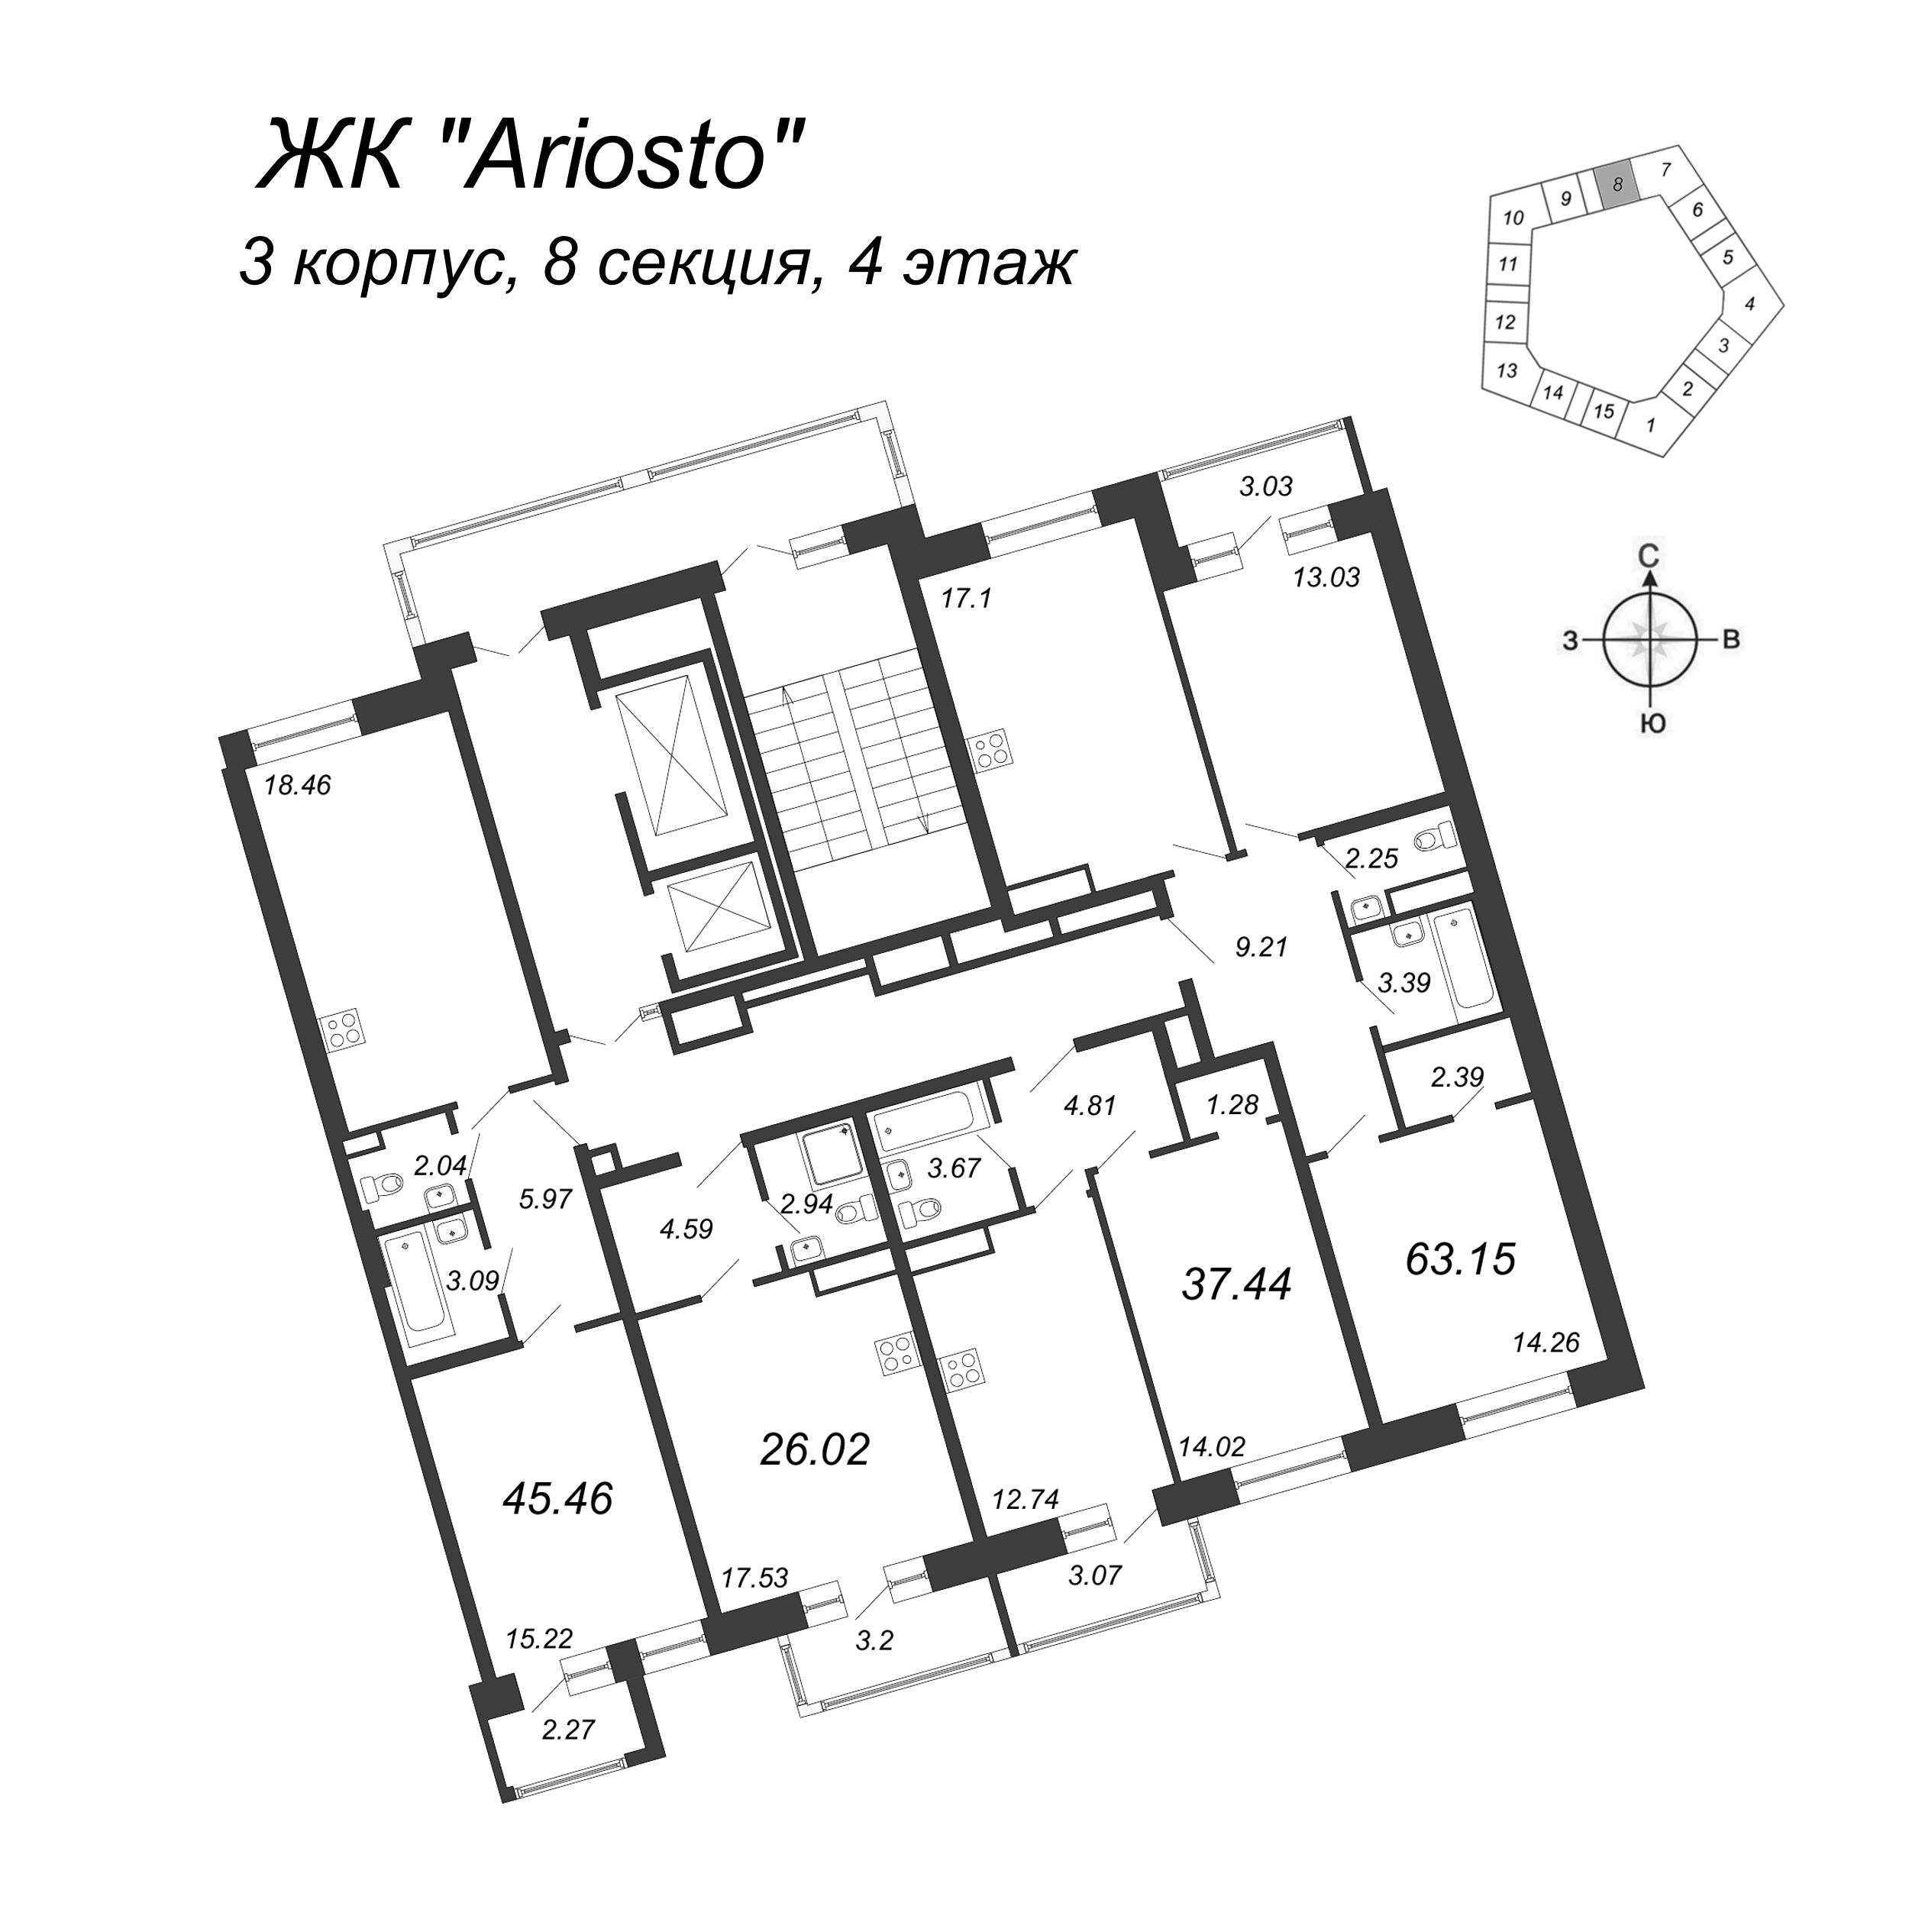 3-комнатная (Евро) квартира, 63.15 м² в ЖК "Ariosto" - планировка этажа